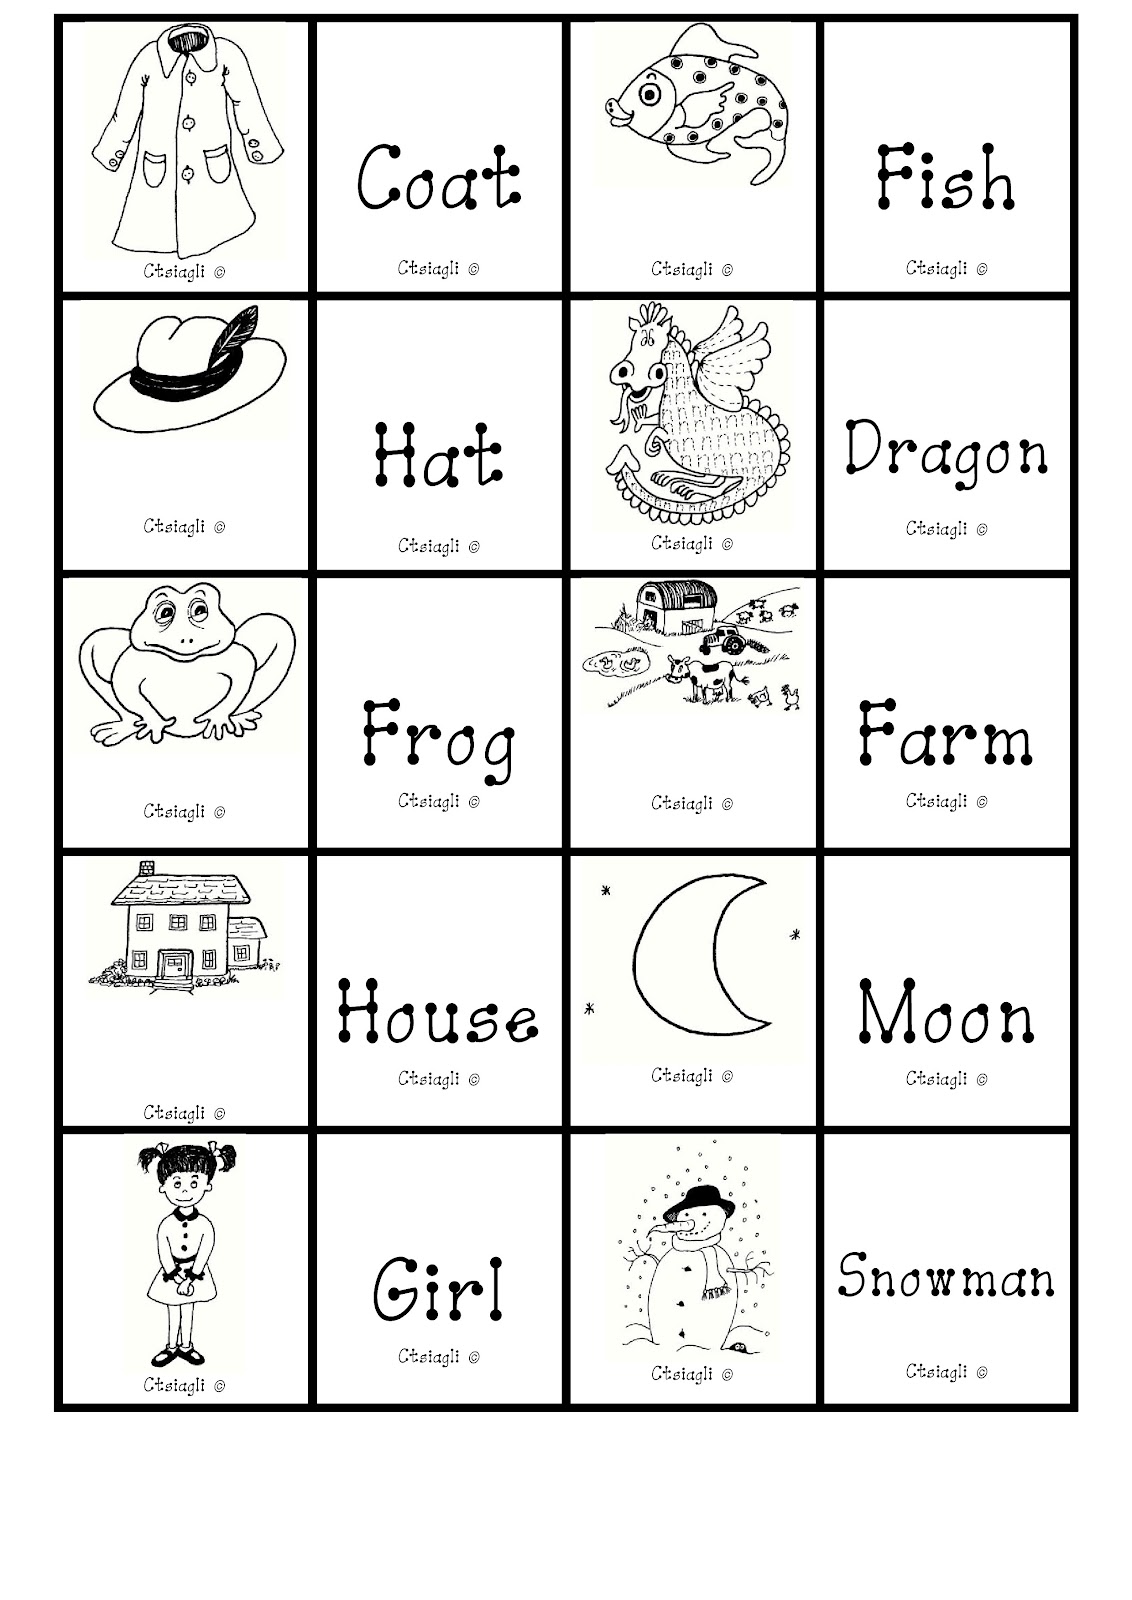 i-teacher-printable-alphabet-games-memory-letter-tiles